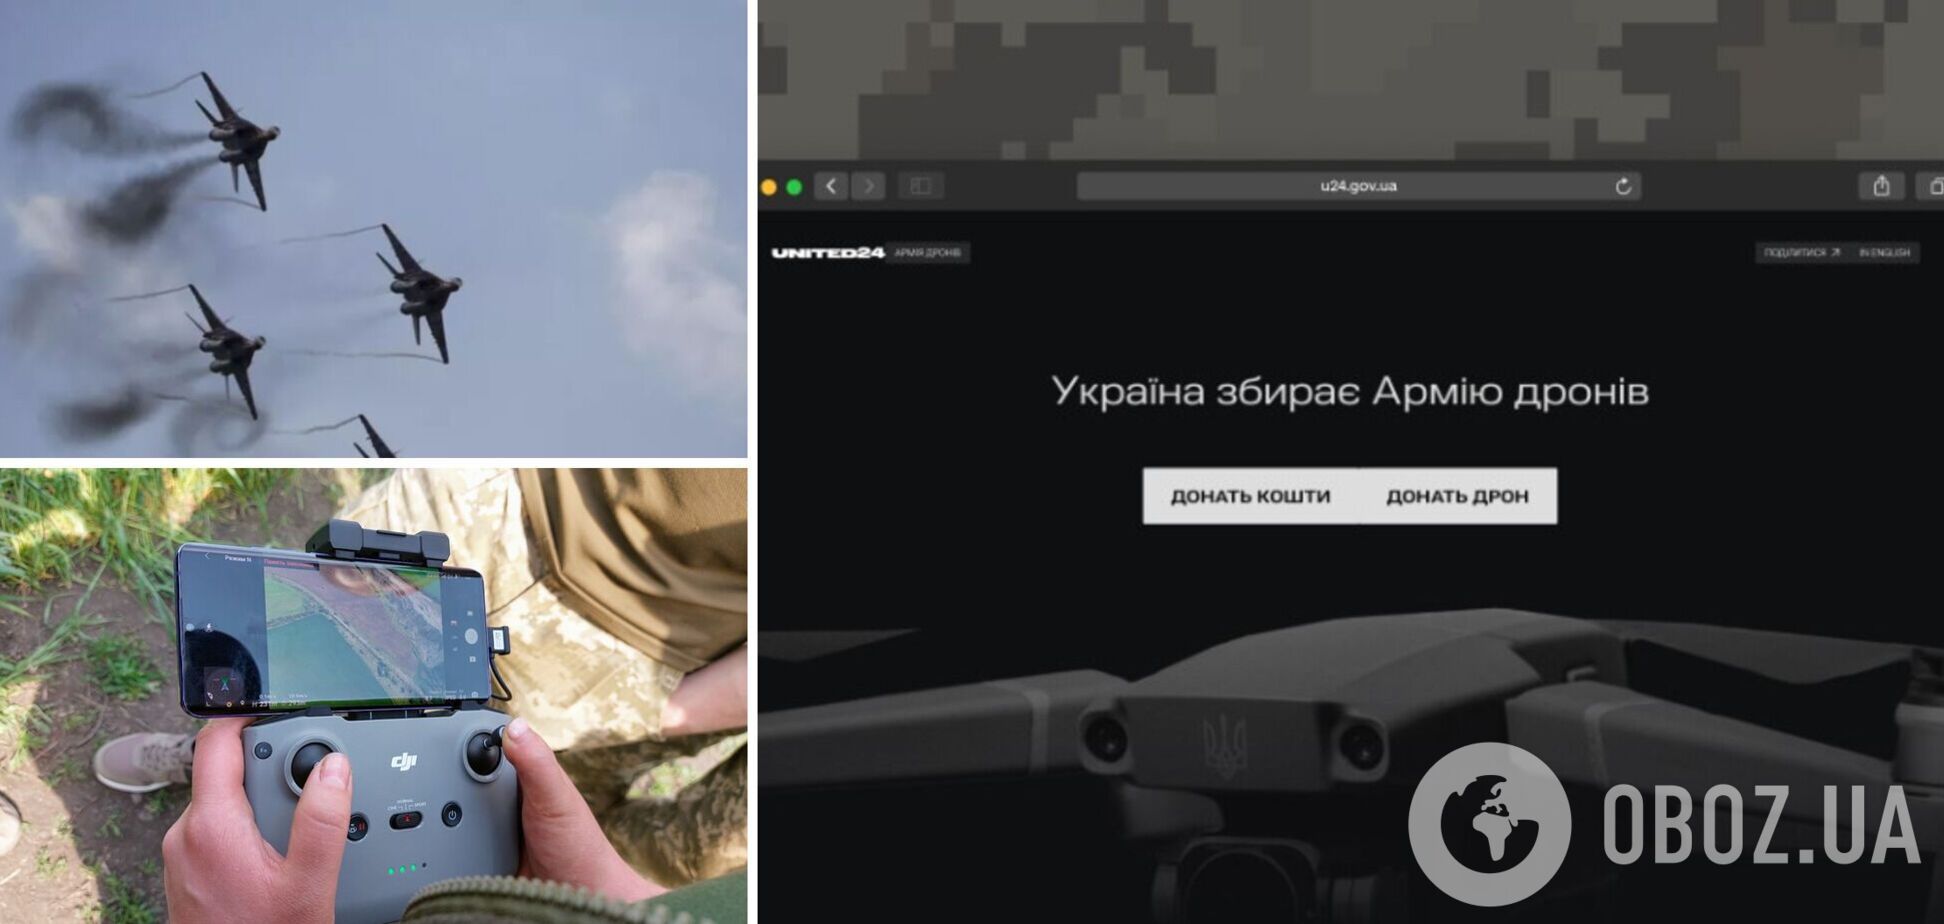 В Україні збирають 'Армію дронів'